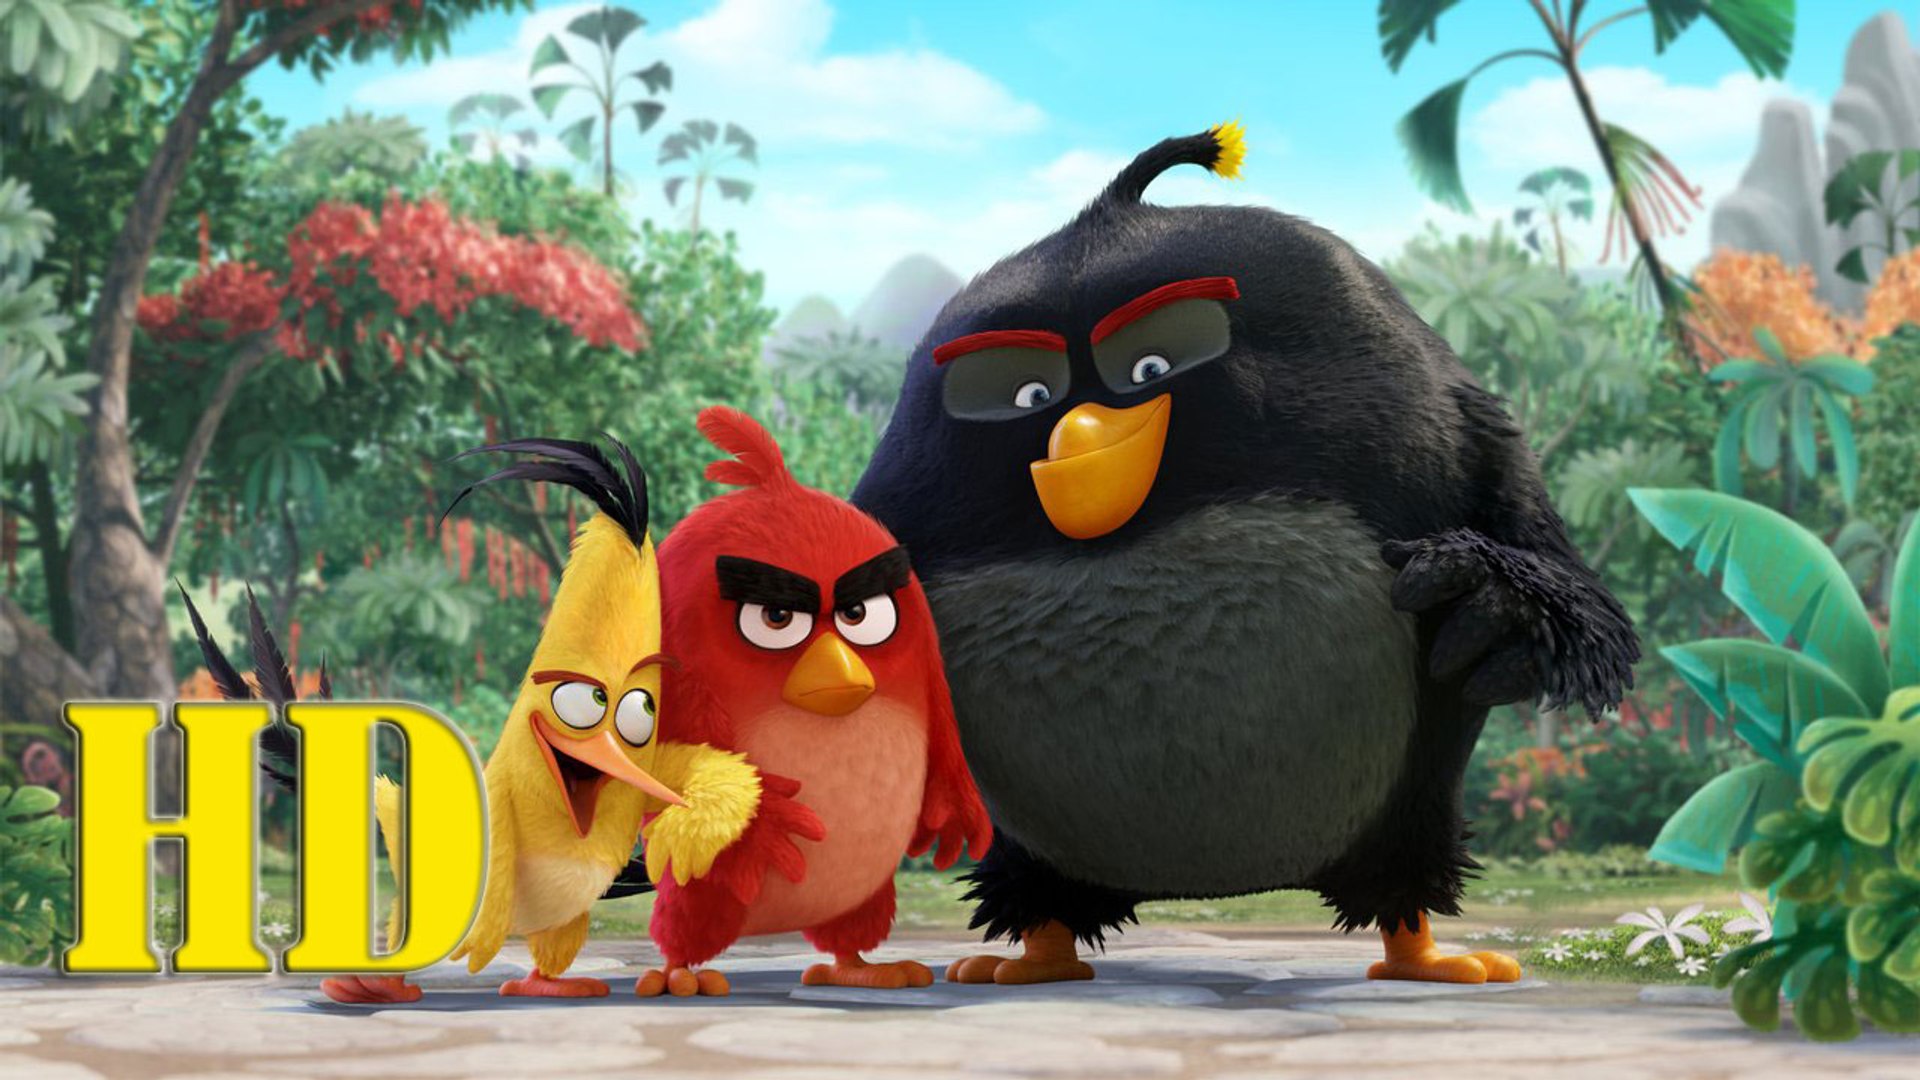 The Angry Birds Movie Fullmovie! free - Video Dailymotion